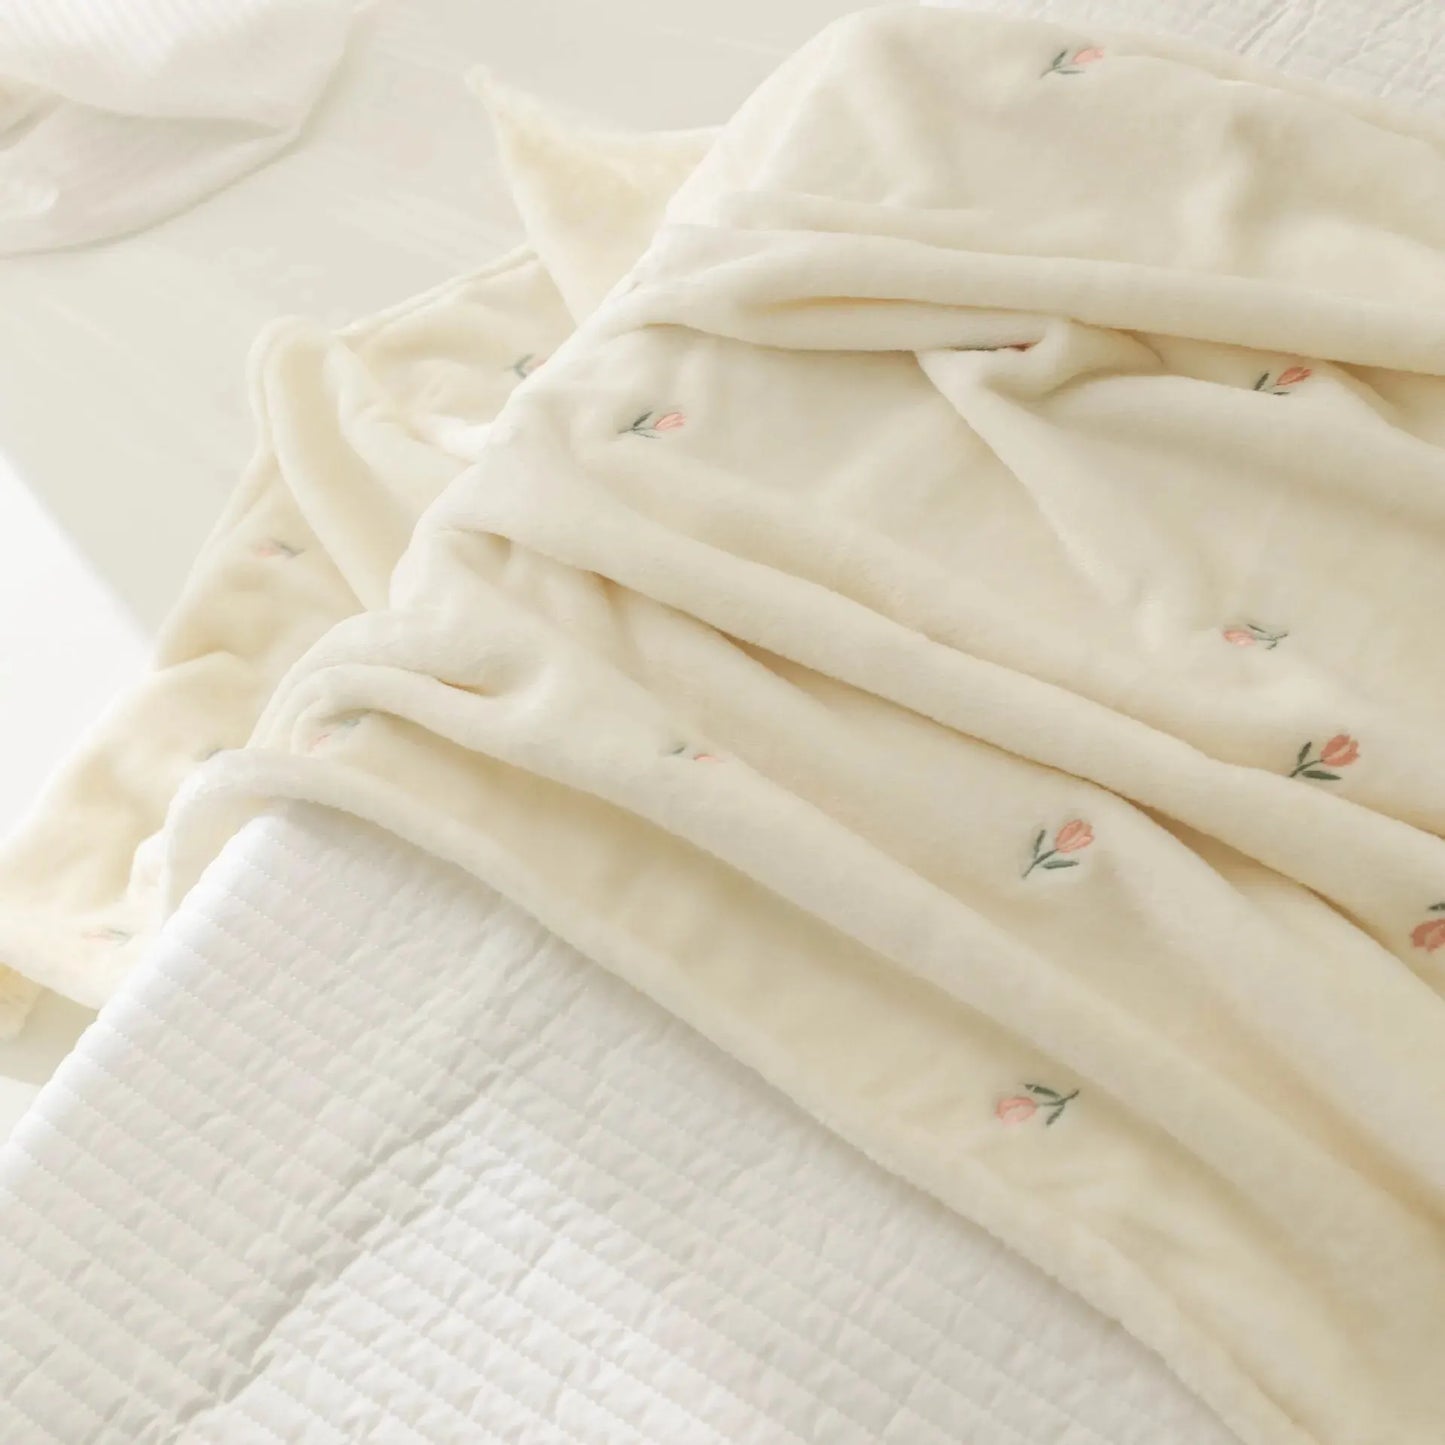 Couverture de Bébé en Molleton de Corail BABY PREMA douce et confortable avec une délicate broderie florale, délicatement pliée sur un couvre-lit blanc texturé, invitant une sensation de chaleur et de tranquillité dans la chambre. Parfait dans le cadre des nécessaires pour